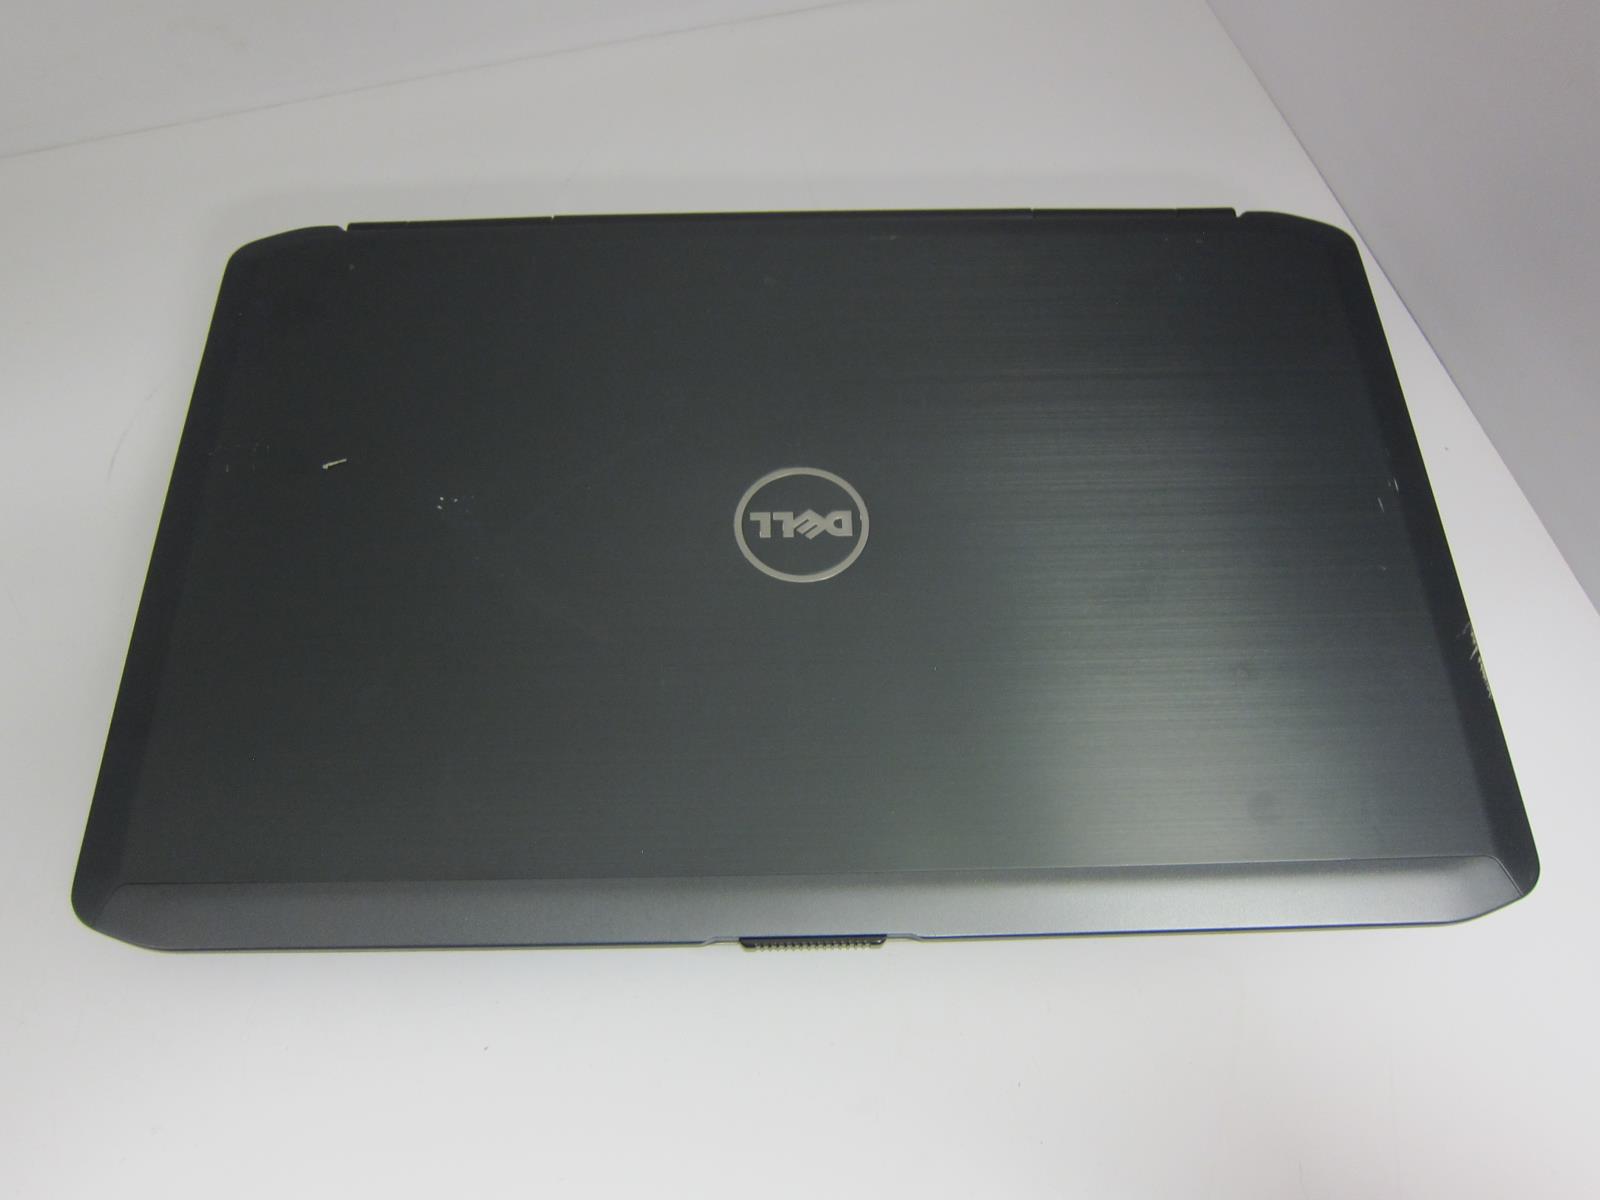 Dell Latitude E5530 Laptop w/ Intel Core i5-3320m 2.60GHz + 4GB RAM No